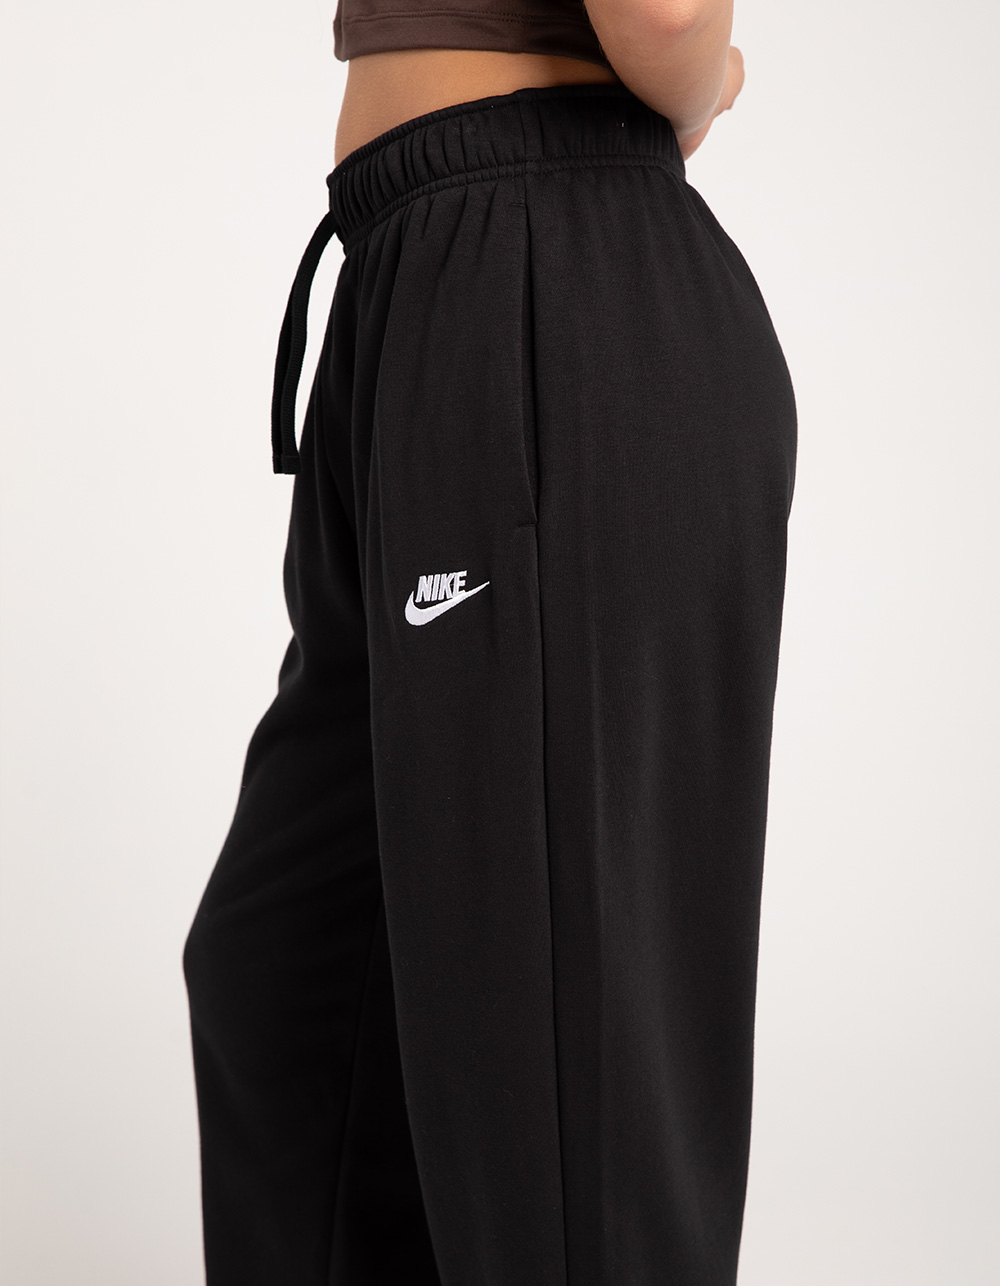 NIKE Sportswear Club Womens Oversized Fleece Sweatpants - BLACK